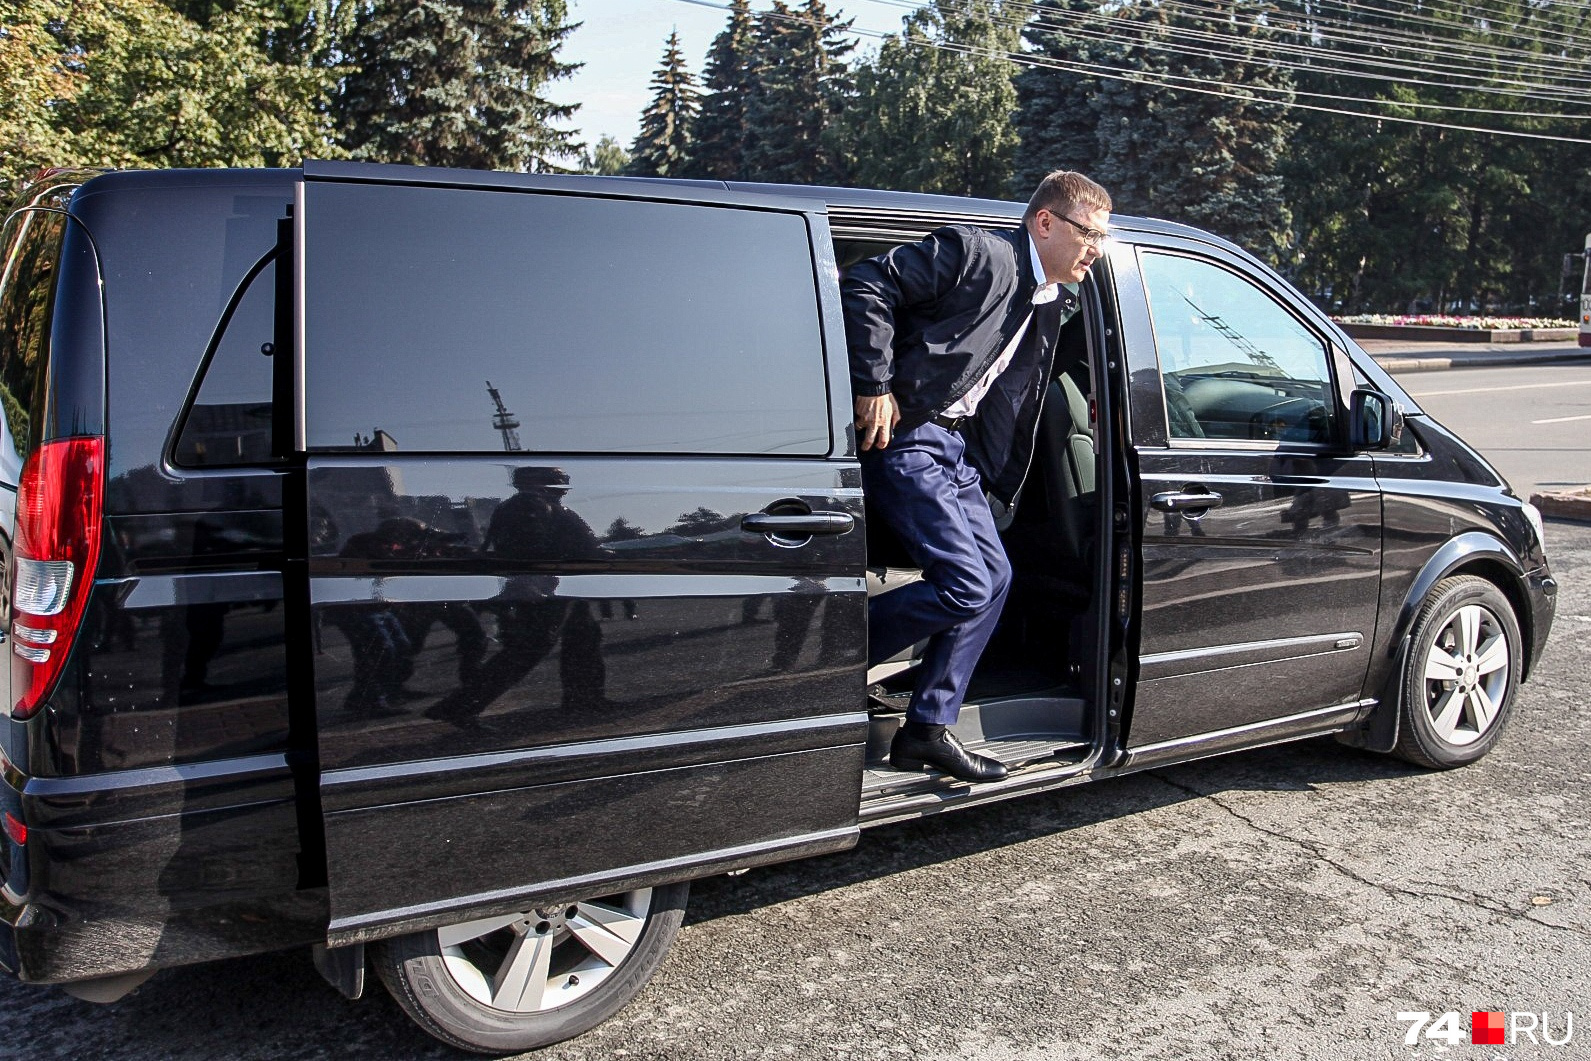 Осмотреть транспорт врио губернатора Алексей Текслер приехал на своём рабочем микроавтобусе